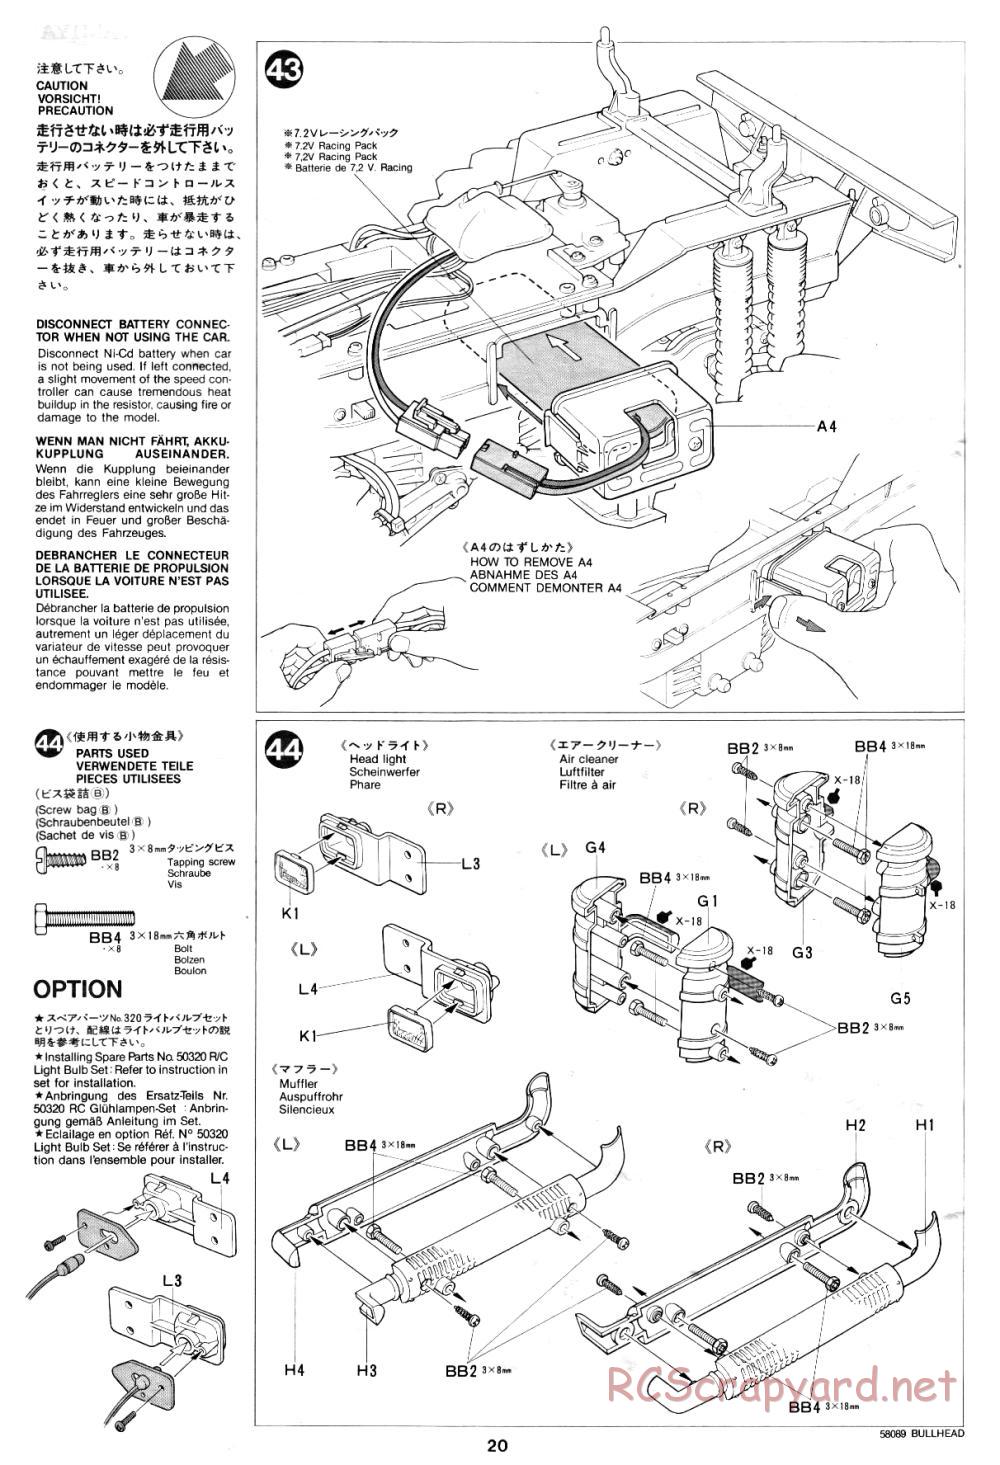 Tamiya - Bullhead - 58089 - Manual - Page 20